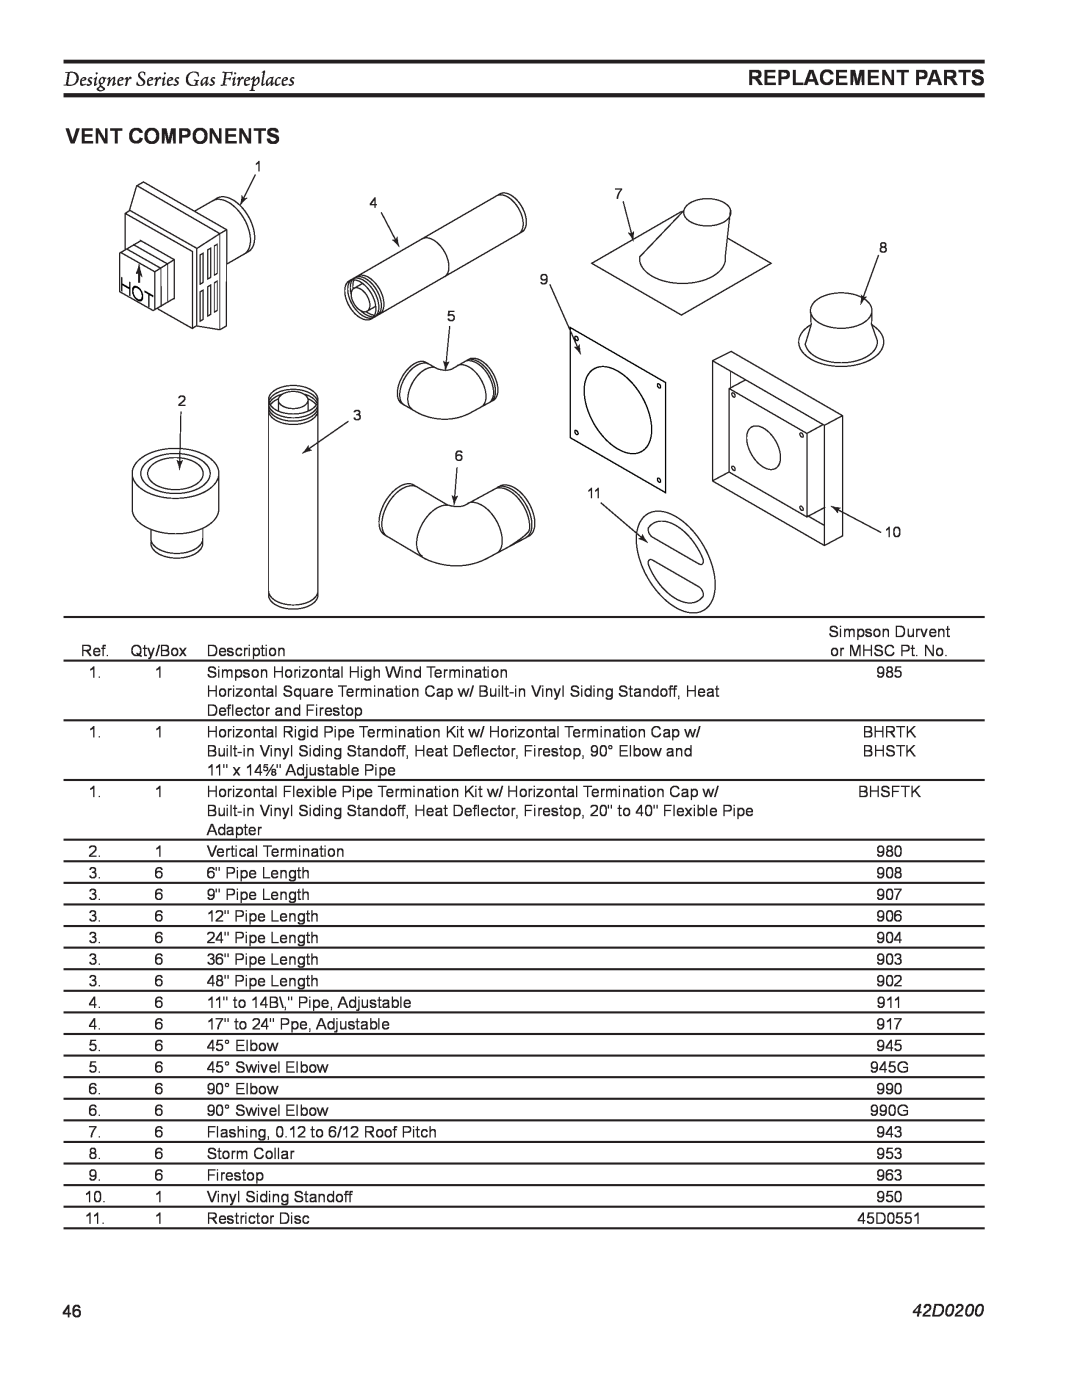 Monessen Hearth CL)NVC/PVC, PF, CR, 624DV(ST Replacement Parts, Vent Components, Designer Series Gas Fireplaces, 42D0200 